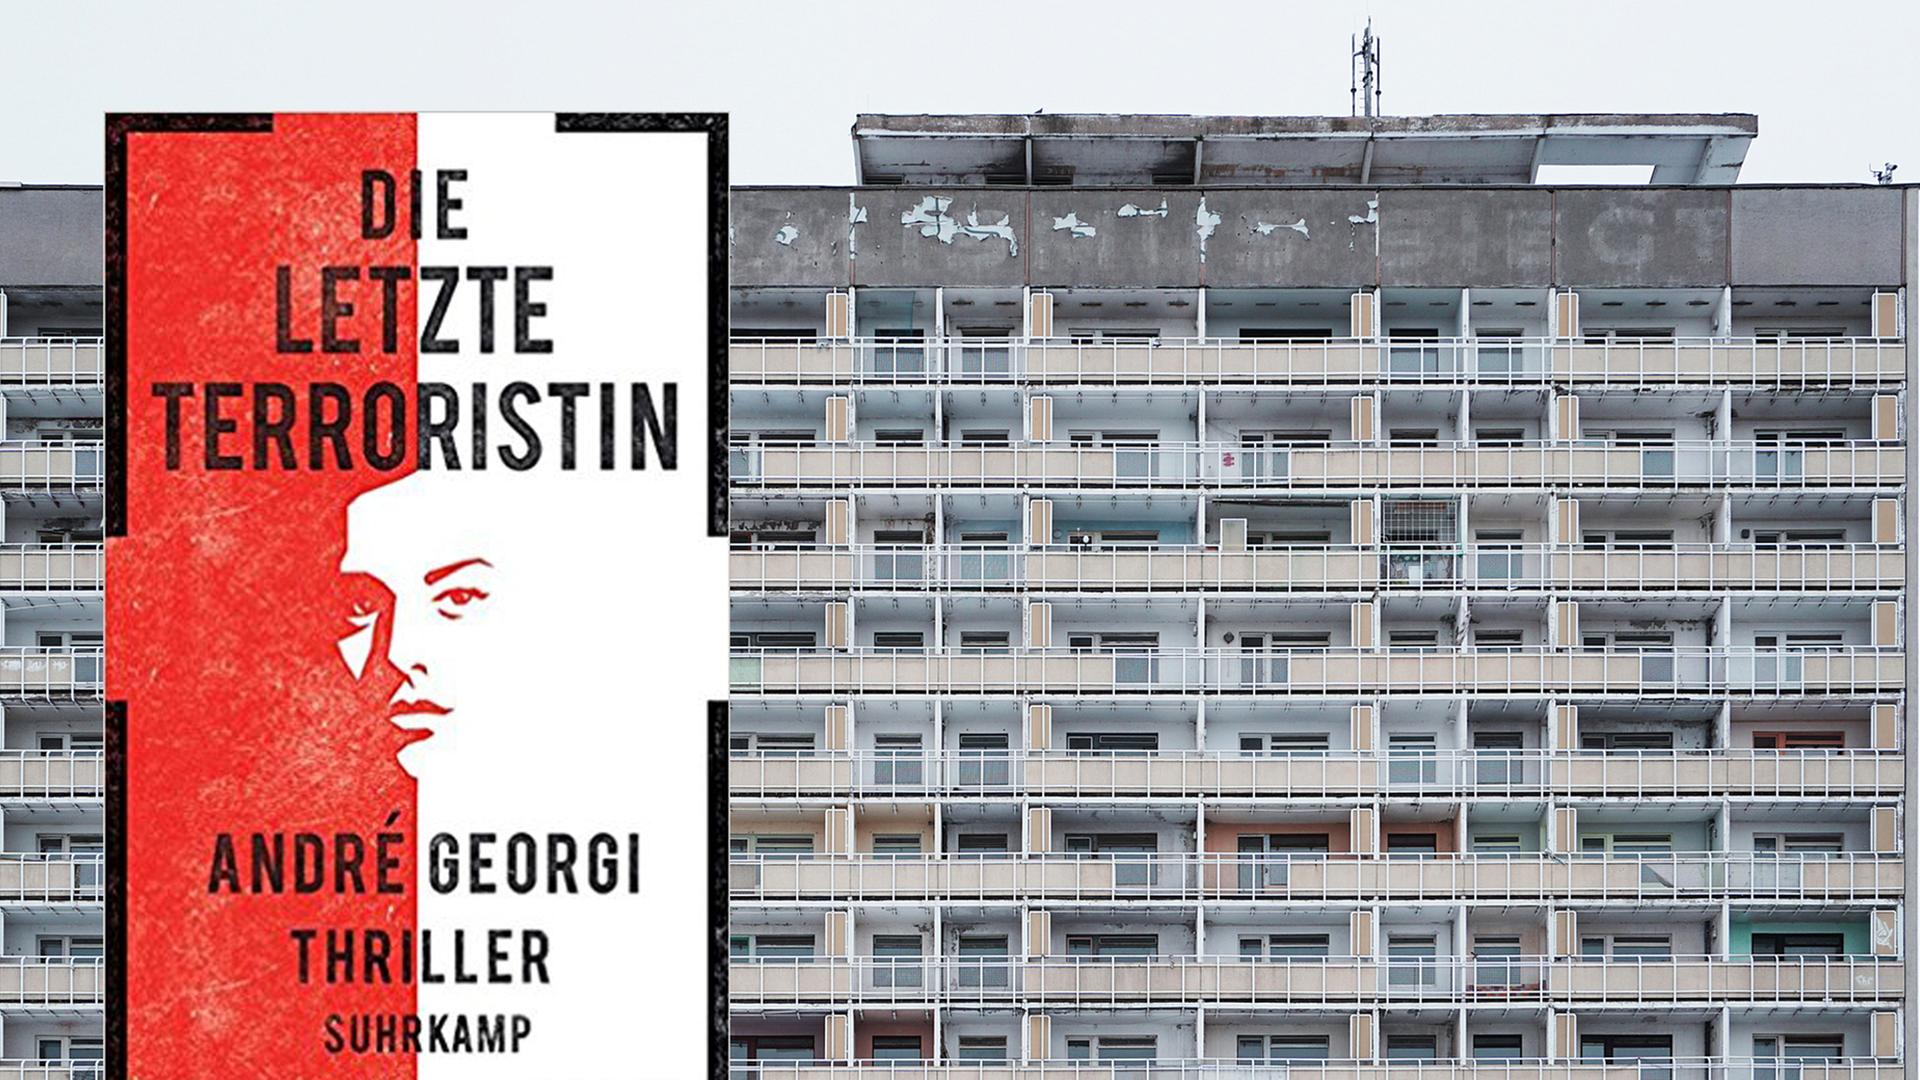 Das Cover von André Georgies Thriller "Die letzte Terroristin", im Hintergrund ist ein Plattenbau in Dresden zu sehen.